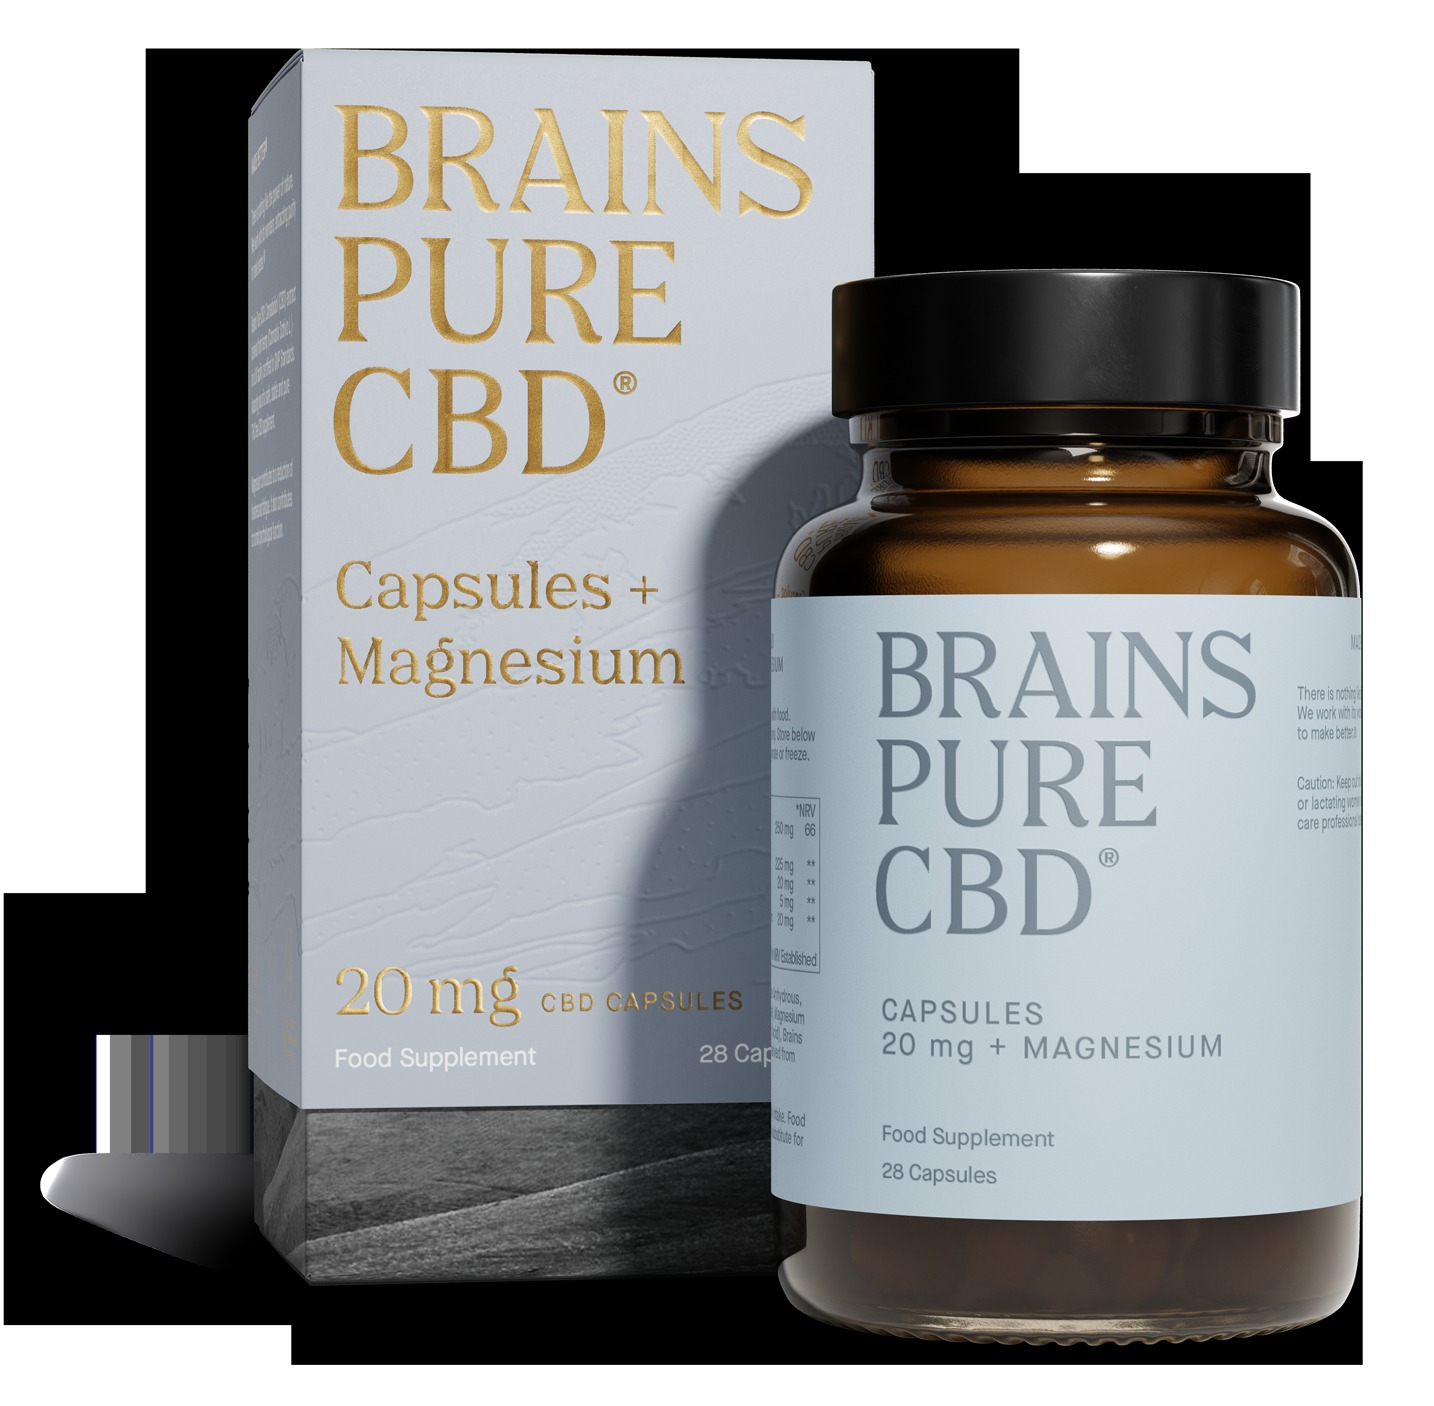 Brains Pure CBD+ Magnesium hilft, das Nervensystem zu beruhigen